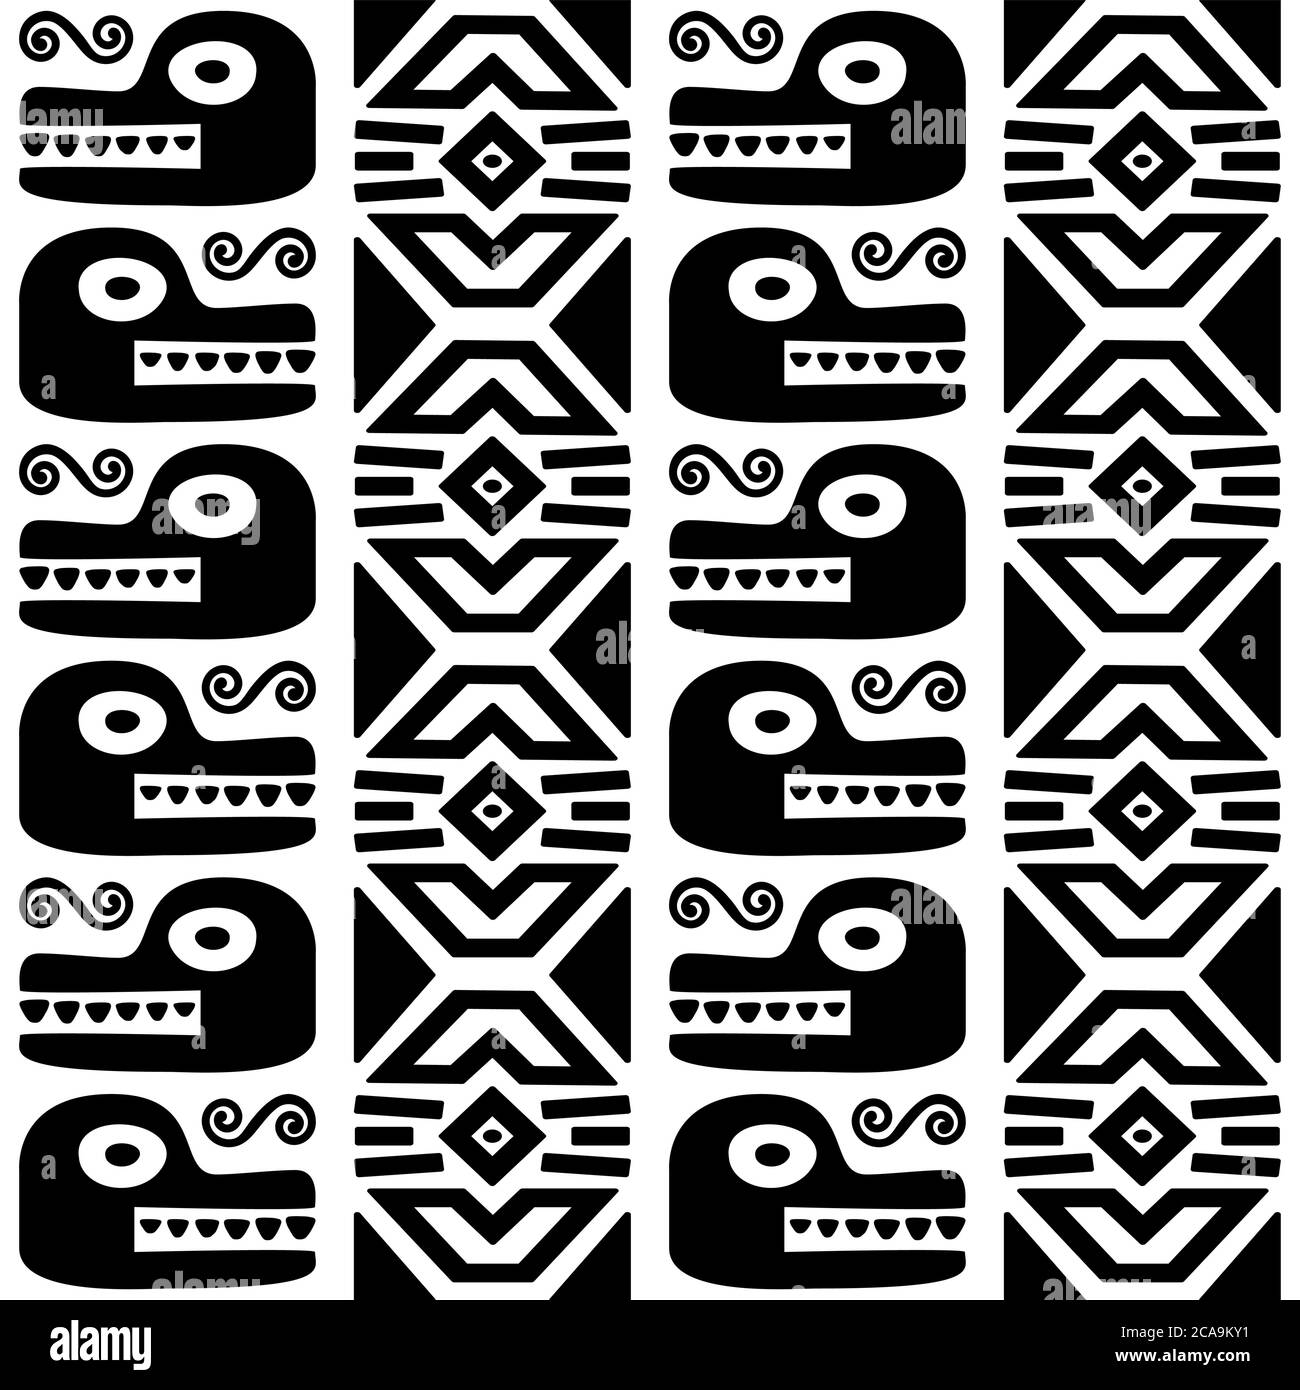 Animaux aztèques, serpent maya, ancien vecteur mexicain modèle sans couture en noir sur fond blanc Illustration de Vecteur